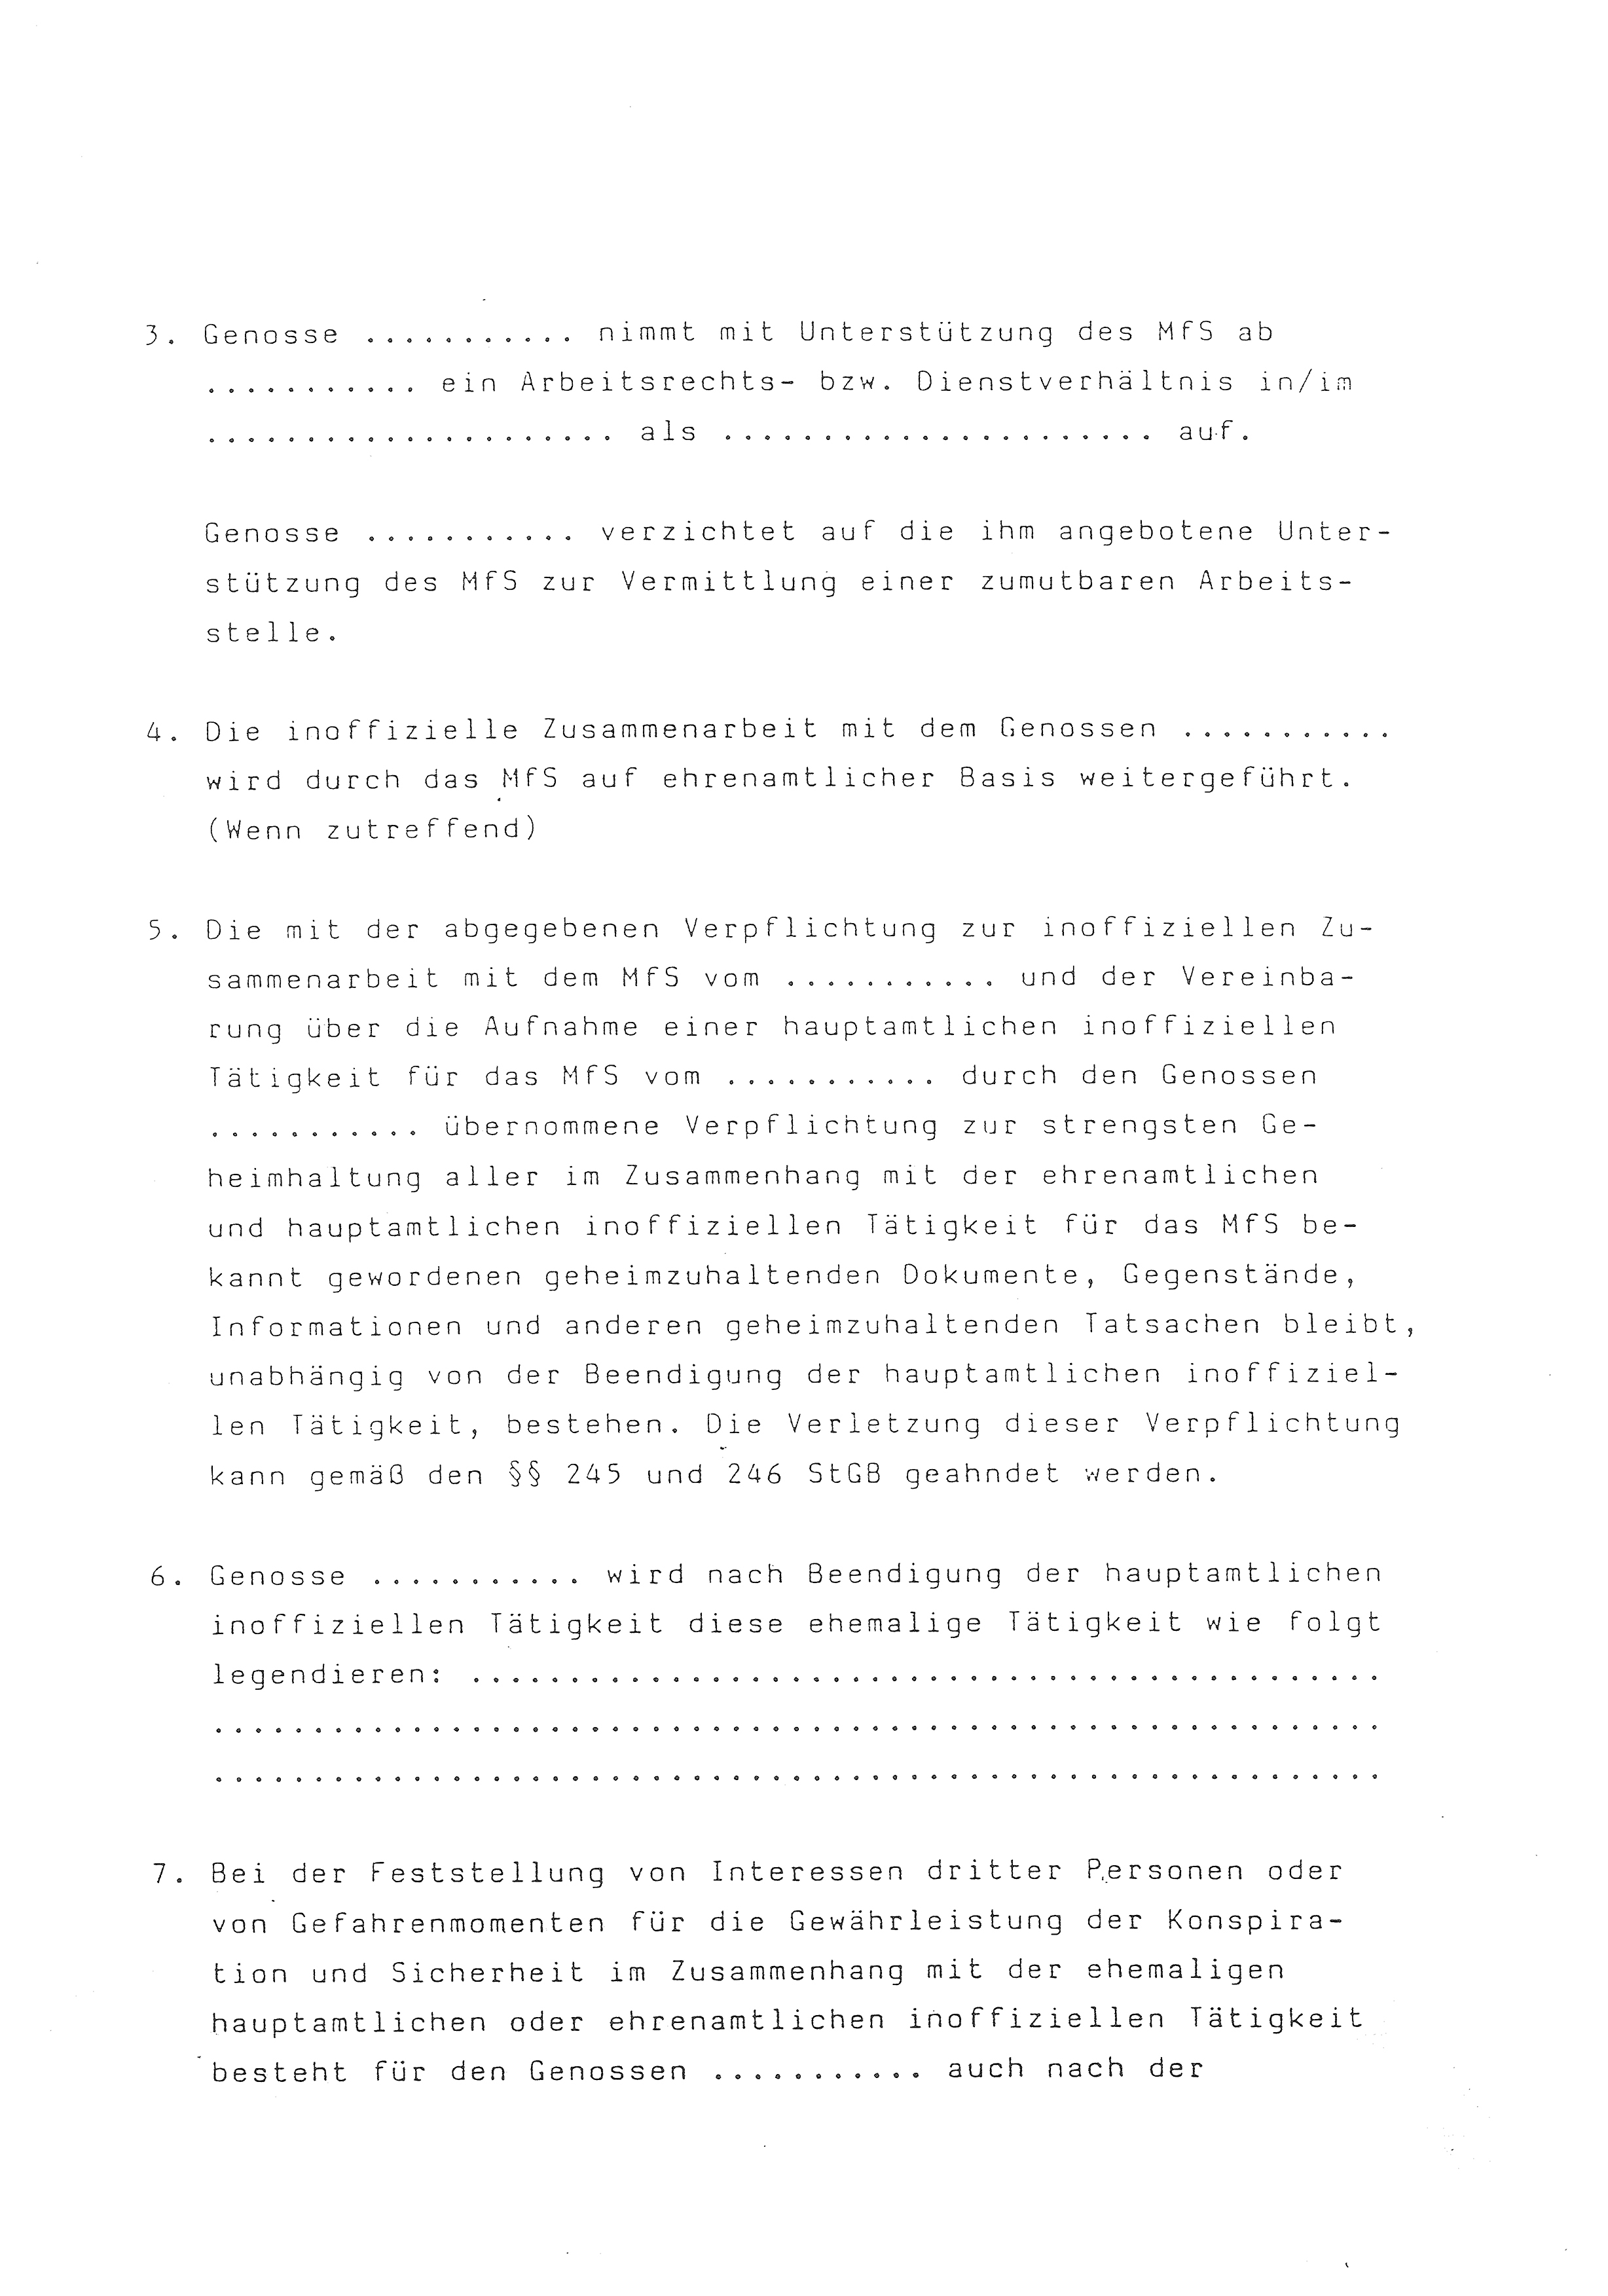 2. Durchführungsbestimmung zur Richtlinie 1/79 über die Arbeit mit hauptamtlichen Mitarbeitern des MfS (HIM), Deutsche Demokratische Republik (DDR), Ministerium für Staatssicherheit (MfS), Der Minister (Mielke), Geheime Verschlußsache (GVS) ooo8-44/86, Berlin 1986, Seite 62 (2. DB RL 1/79 DDR MfS Min. GVS ooo8-44/86 1986, S. 62)